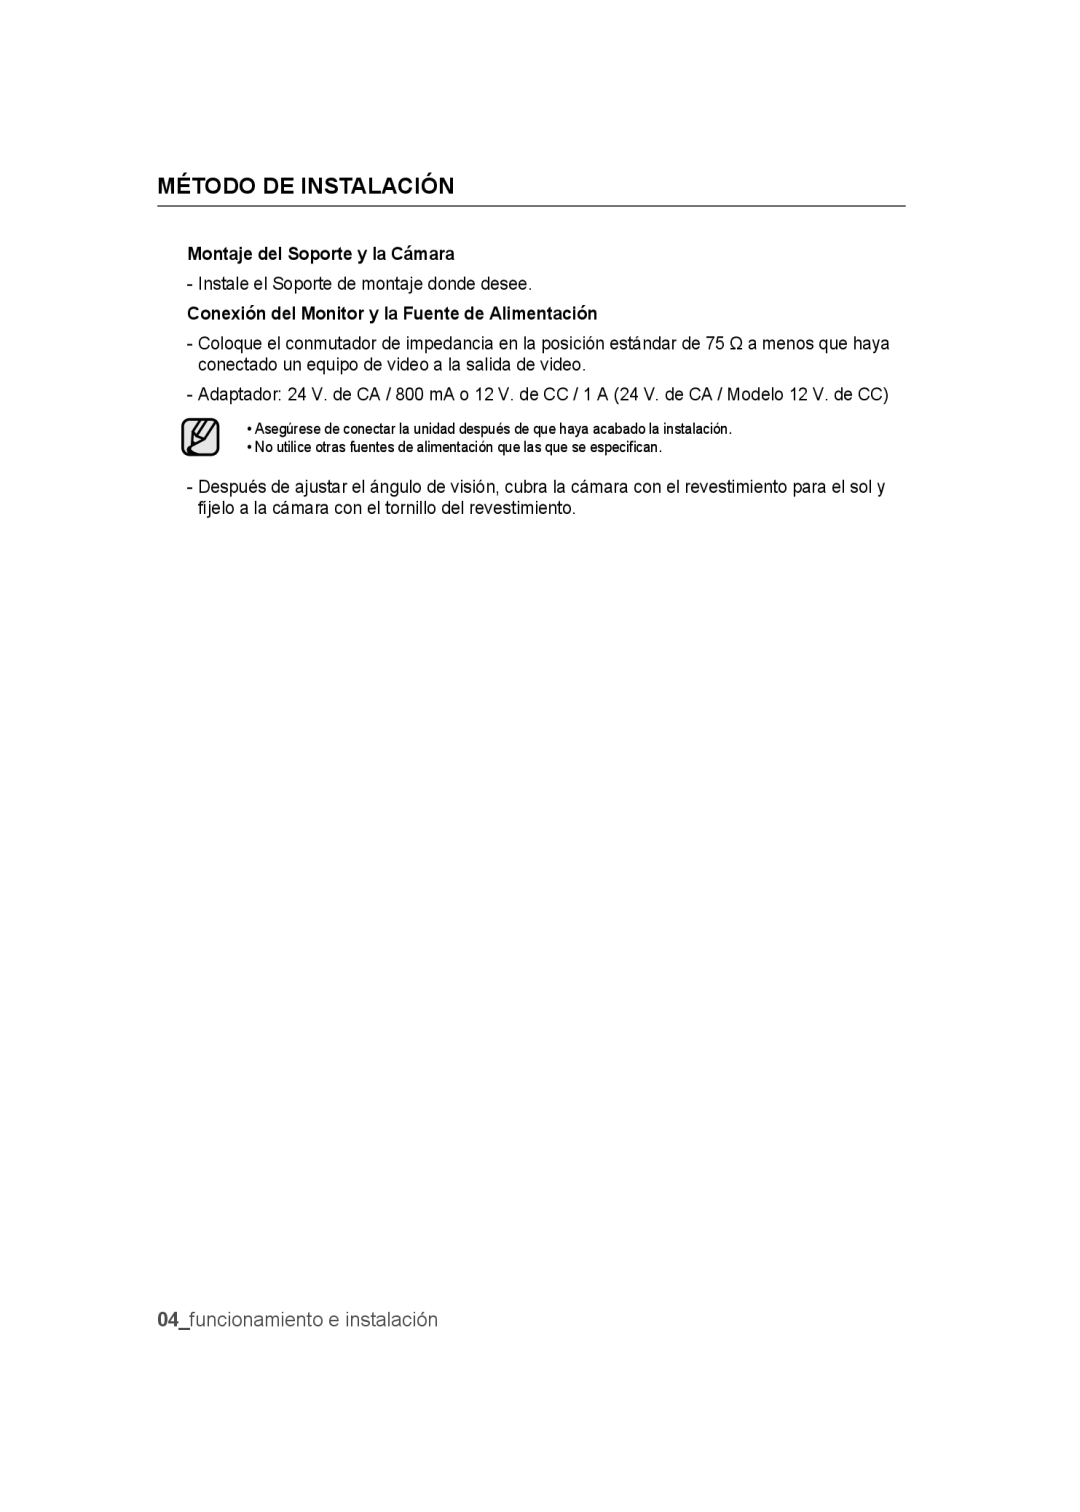 Samsung SCC-B9372P manual Método de instalación, funcionamiento e instalación 